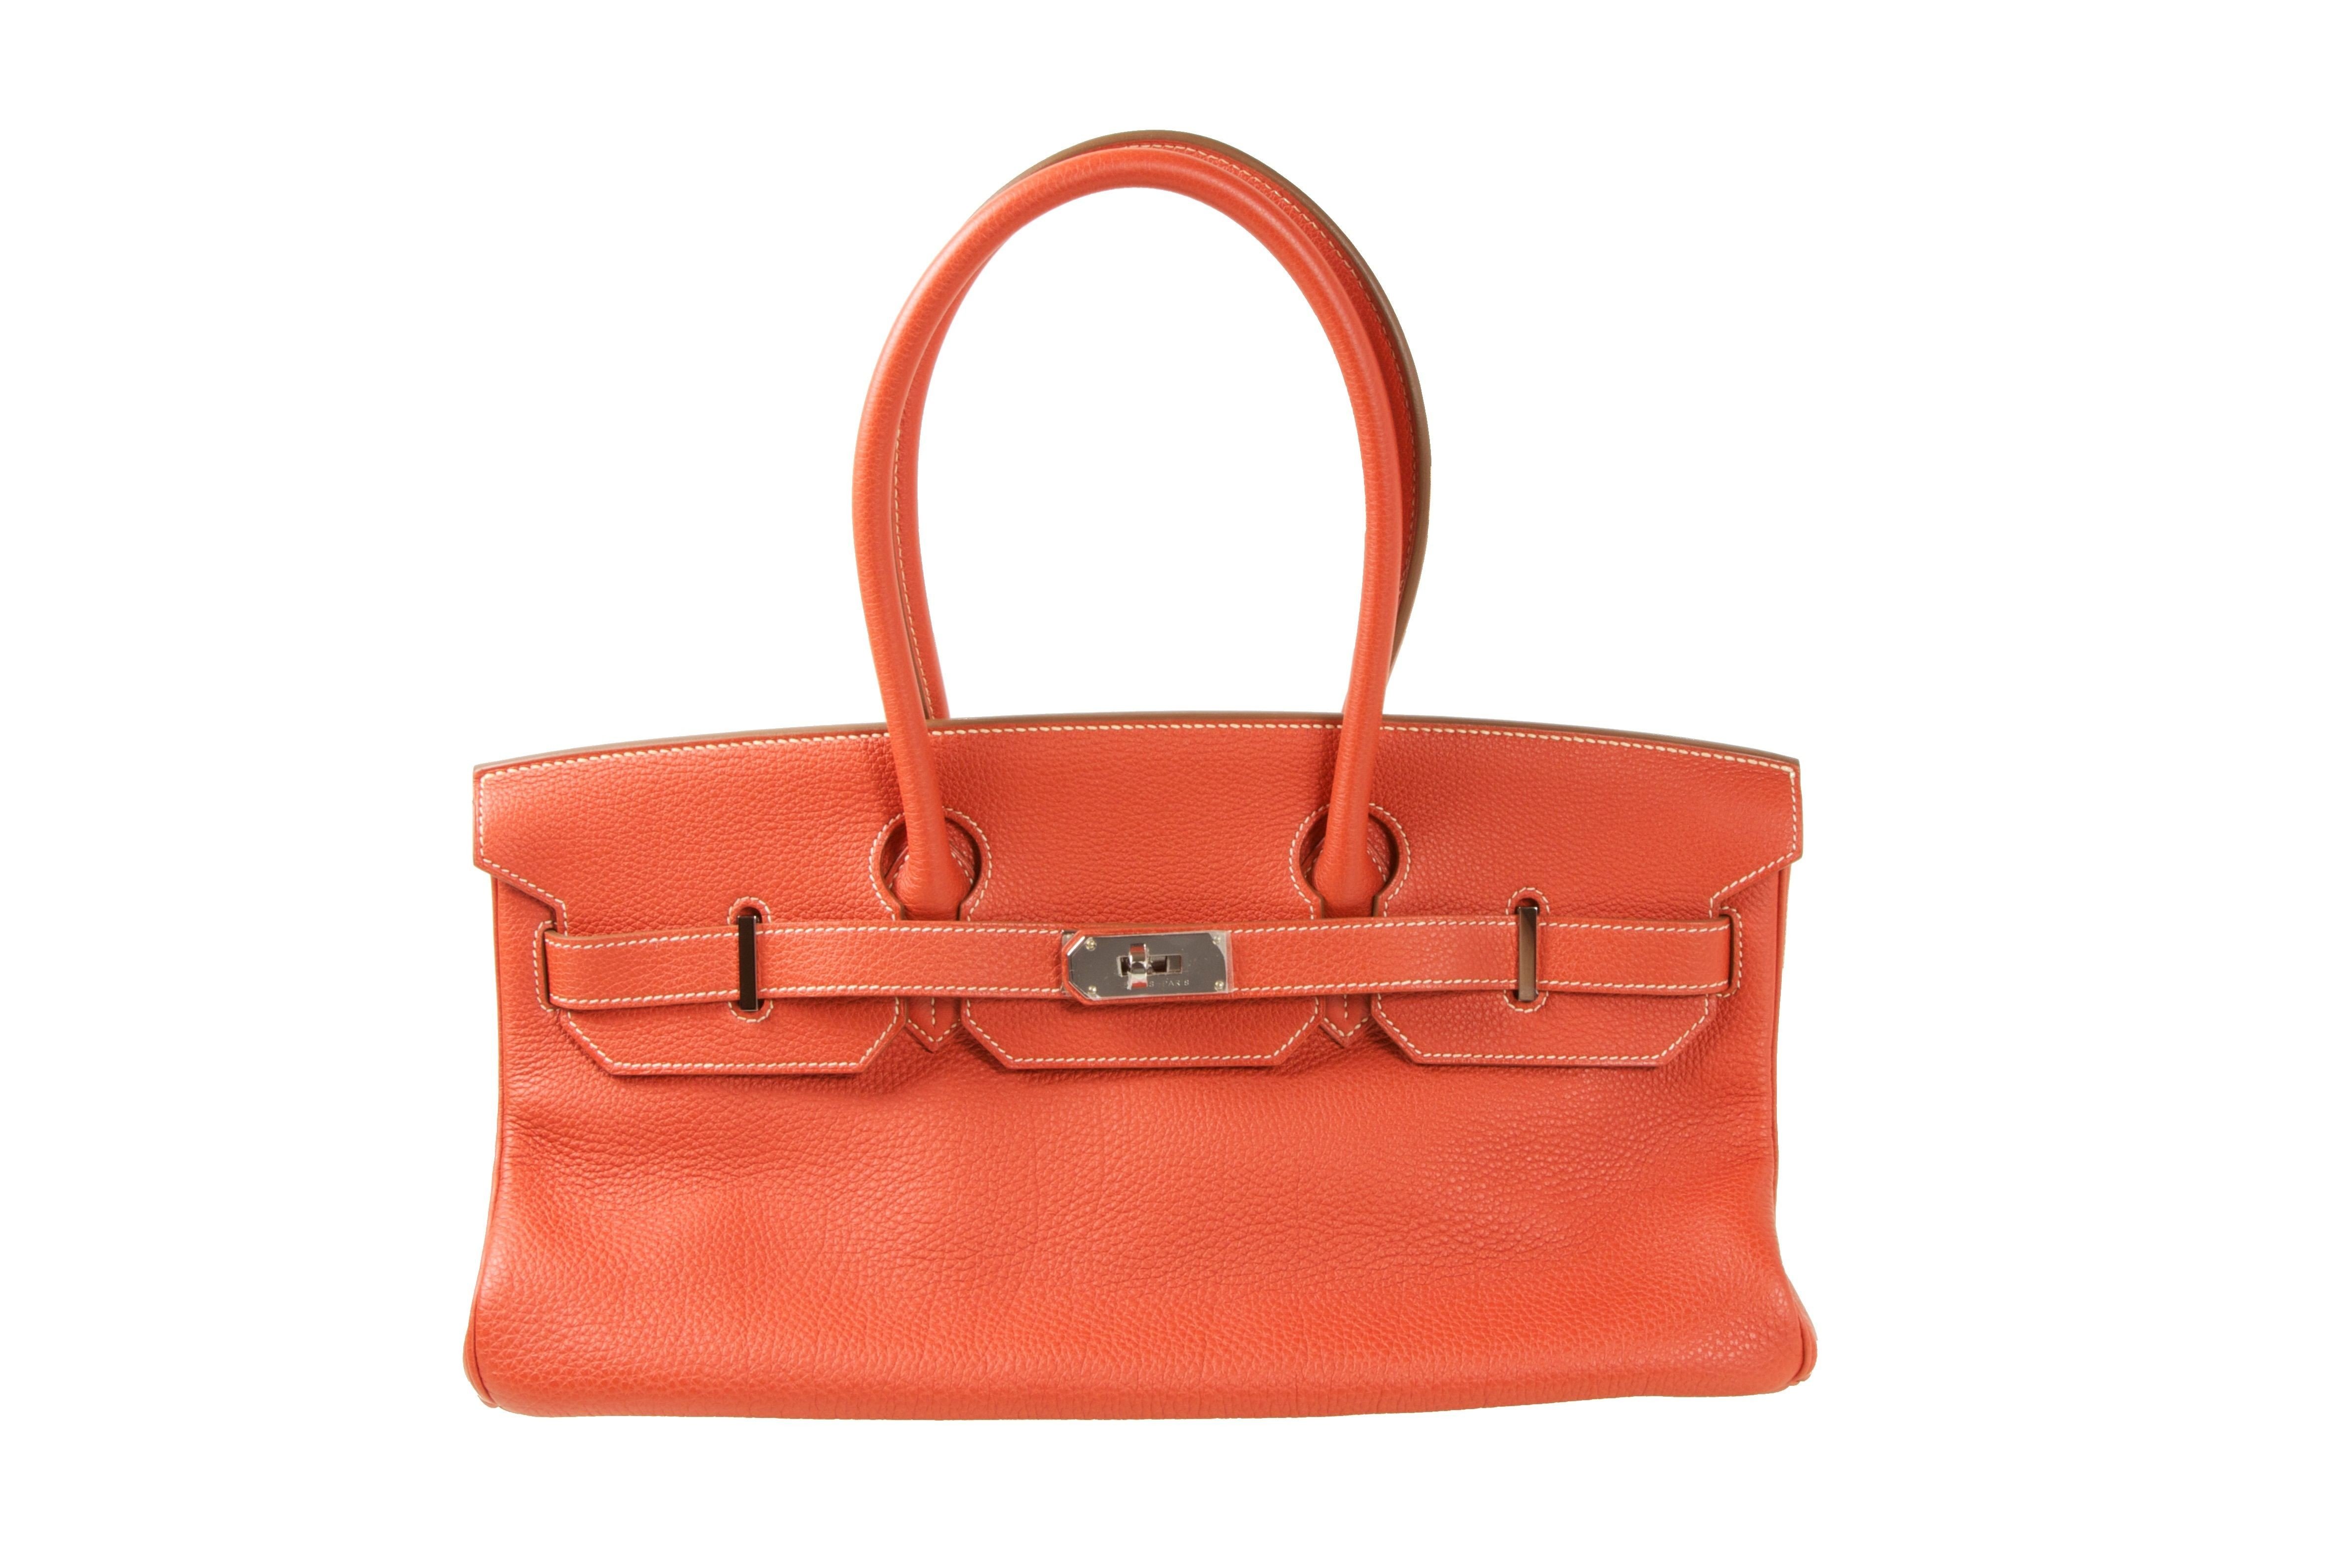 Hermes Top 5 Must Have Bags | Bragmybag